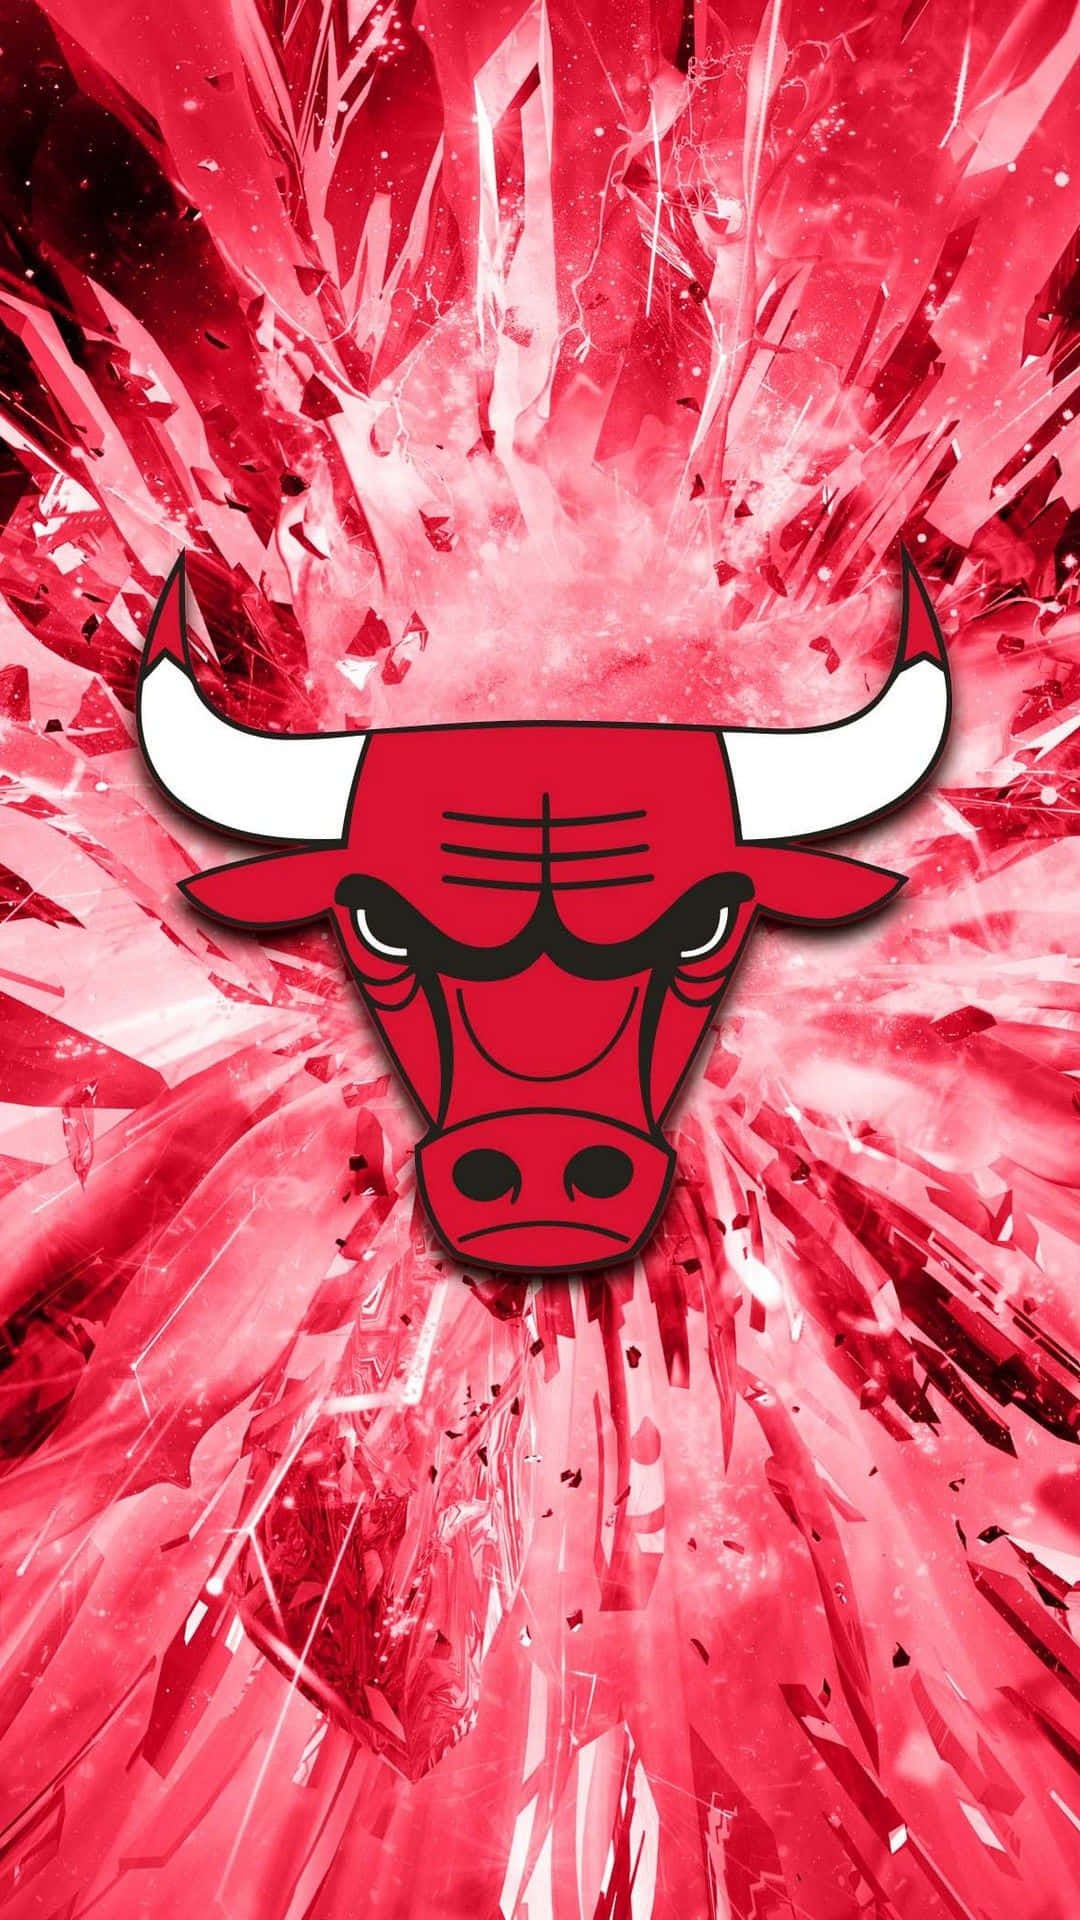 Føl rush af at være en Chicago Bulls fan med denne officielle telefon cover Wallpaper